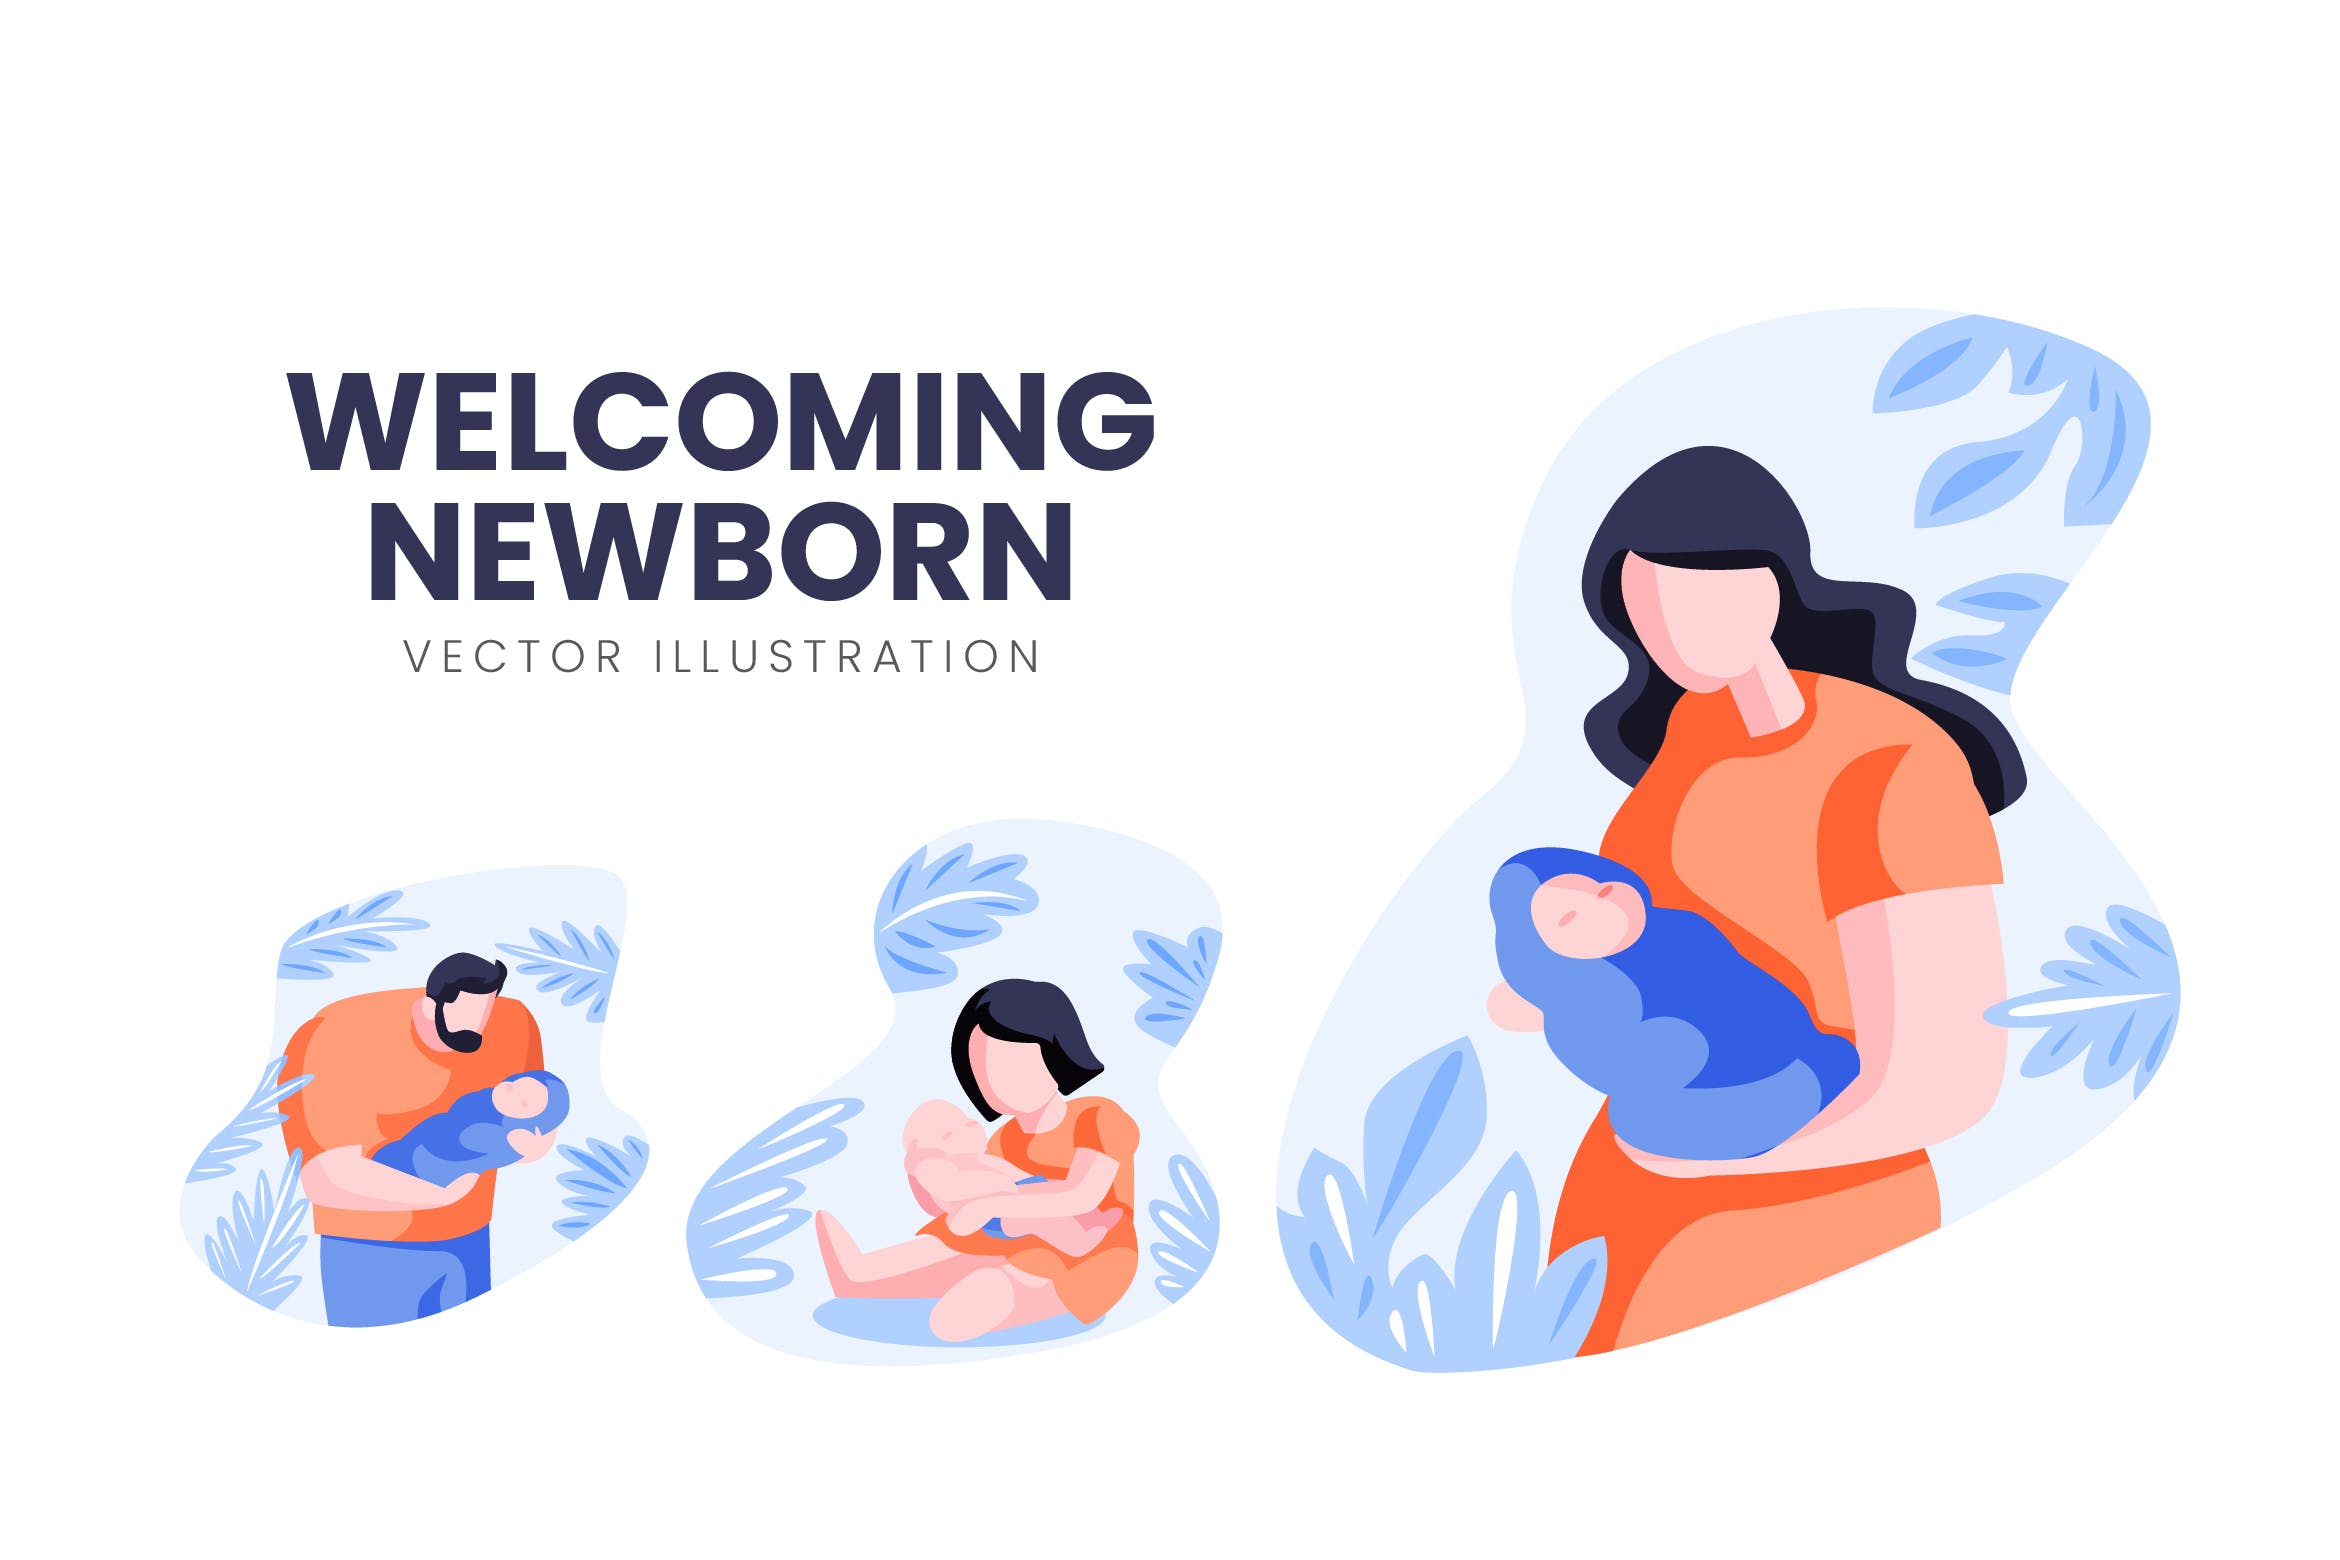 迎接降生新生儿人物形象第一素材精选手绘插画矢量素材 Welcoming Newborn Vector Character Set插图